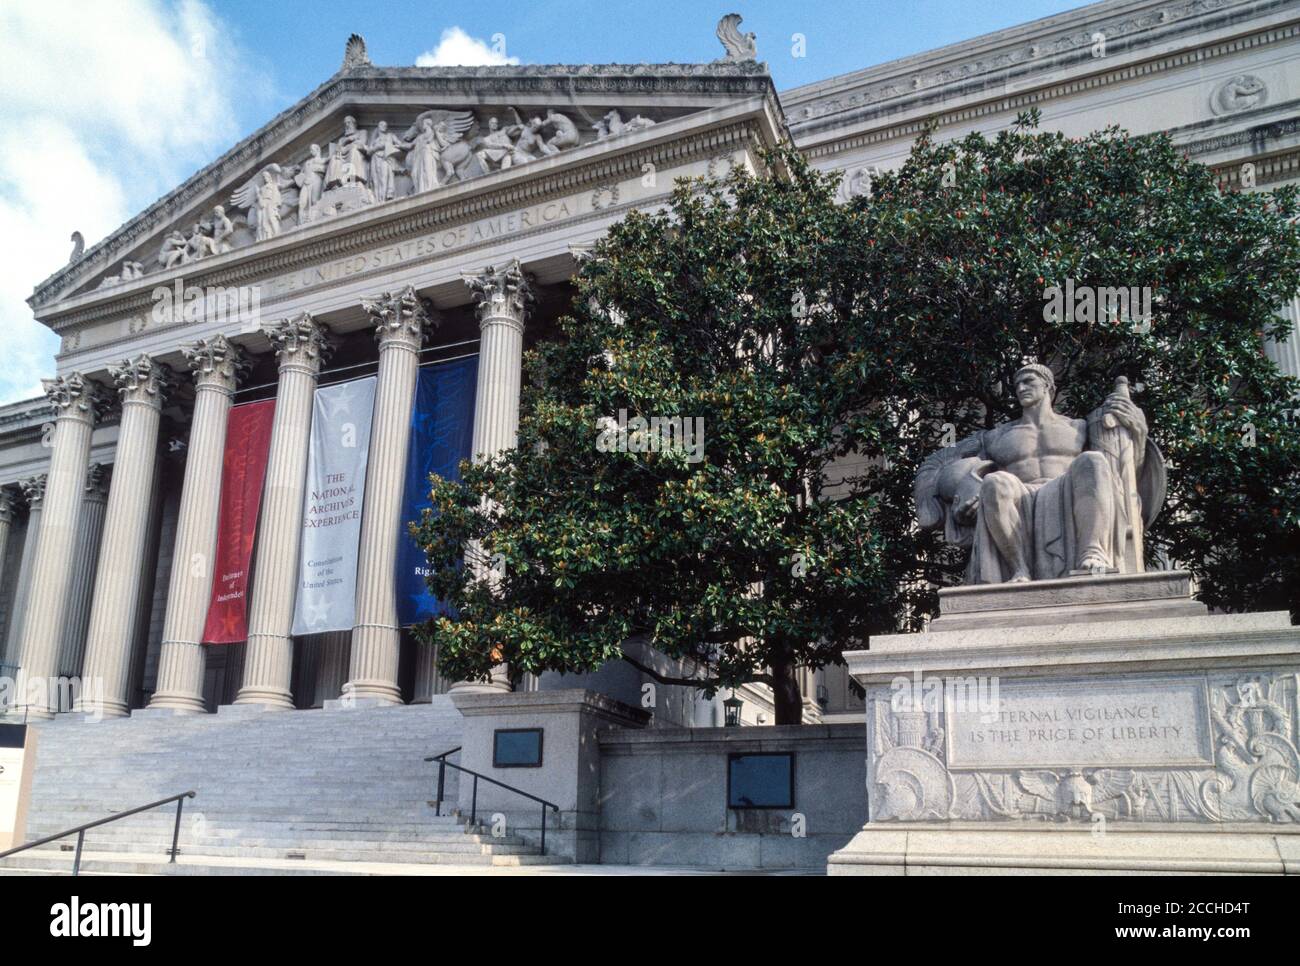 Washington DC. National Archives Building. Ewige Wachsamkeit ist der Preis der Freiheit im Vordergrund. Stockfoto